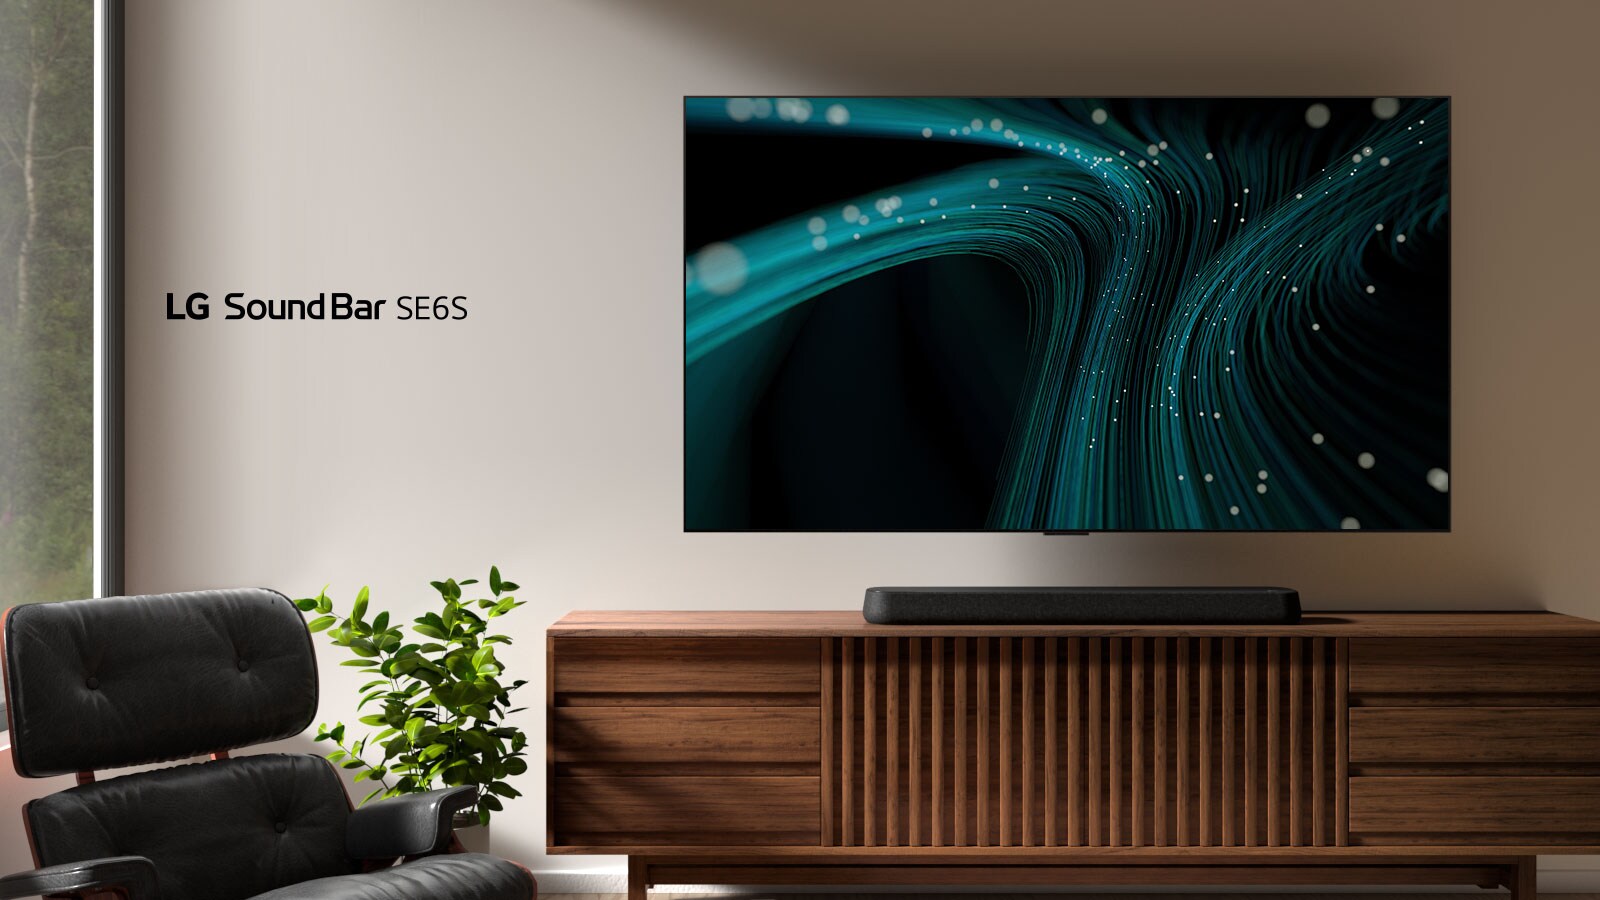 LG Soundbar SE6S placeres på trækabinettet. Ovenover er der placeret et vægmonteret tv med billeder med blå lydbølger og prikkede lys. På venstre side ses et vindue, og en sort læderstol er placeret foran en grøn plante.